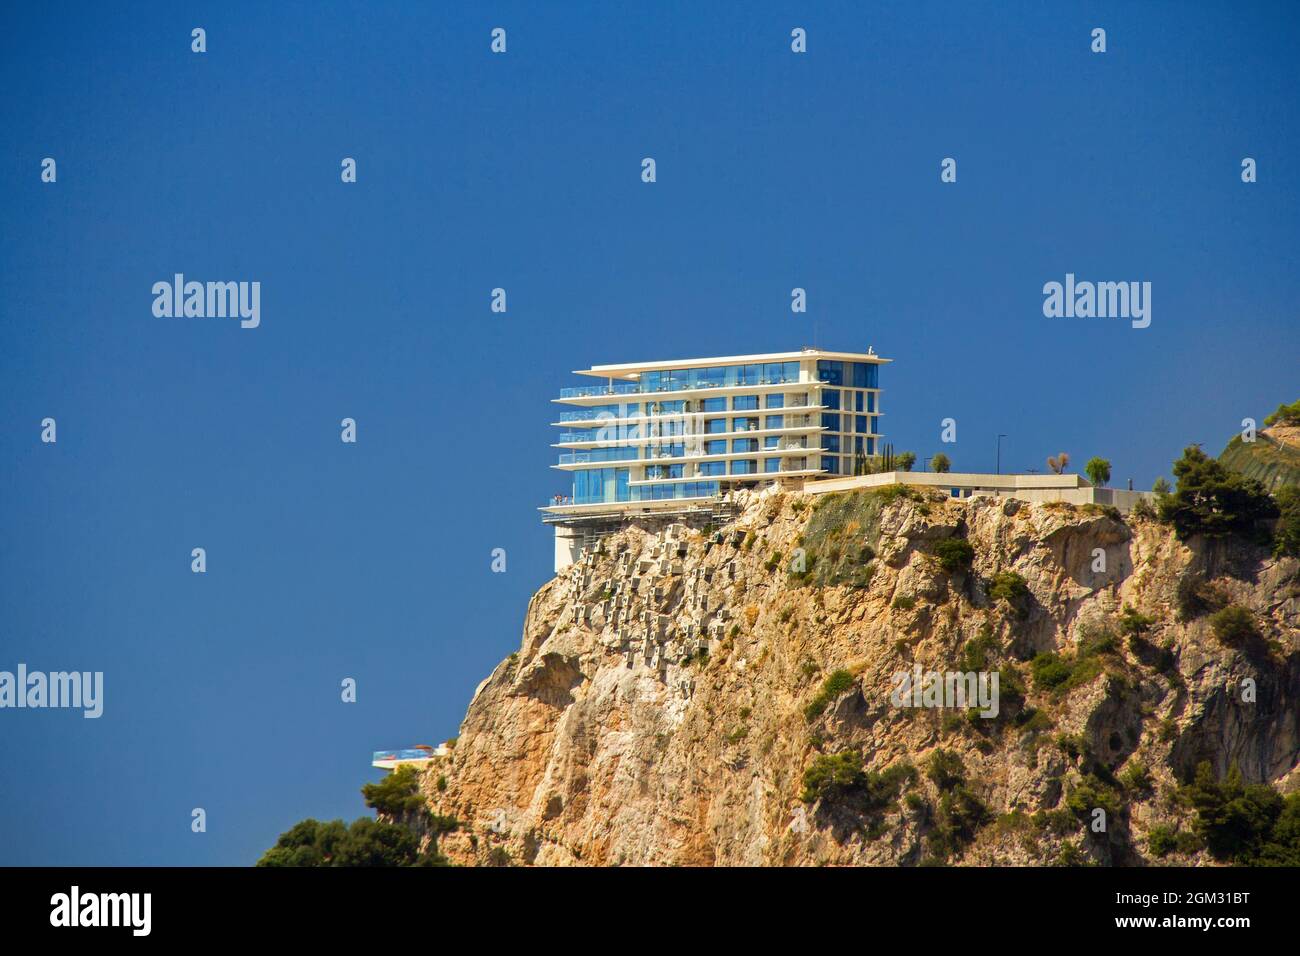 La Riviera Maybourne, il nuovo hotel di lusso sul promontorio di Monaco, Roquebrune-Cap-Martin, Francia, Costa azzurra Foto Stock